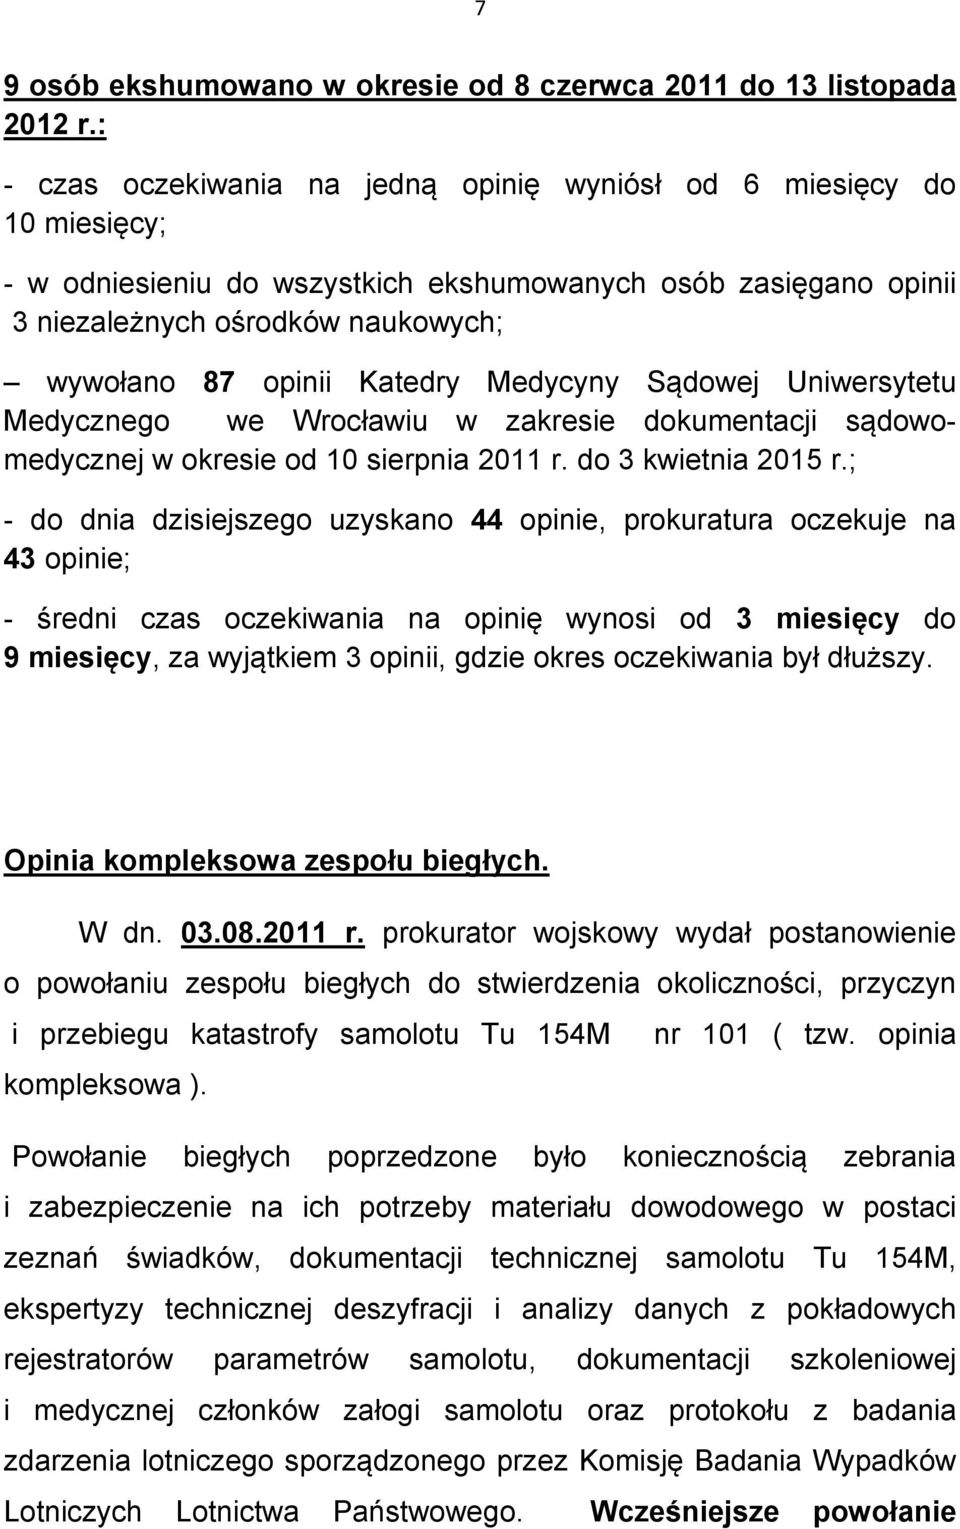 Katedry Medycyny Sądowej Uniwersytetu Medycznego we Wrocławiu w zakresie dokumentacji sądowomedycznej w okresie od 10 sierpnia 2011 r. do 3 kwietnia 2015 r.